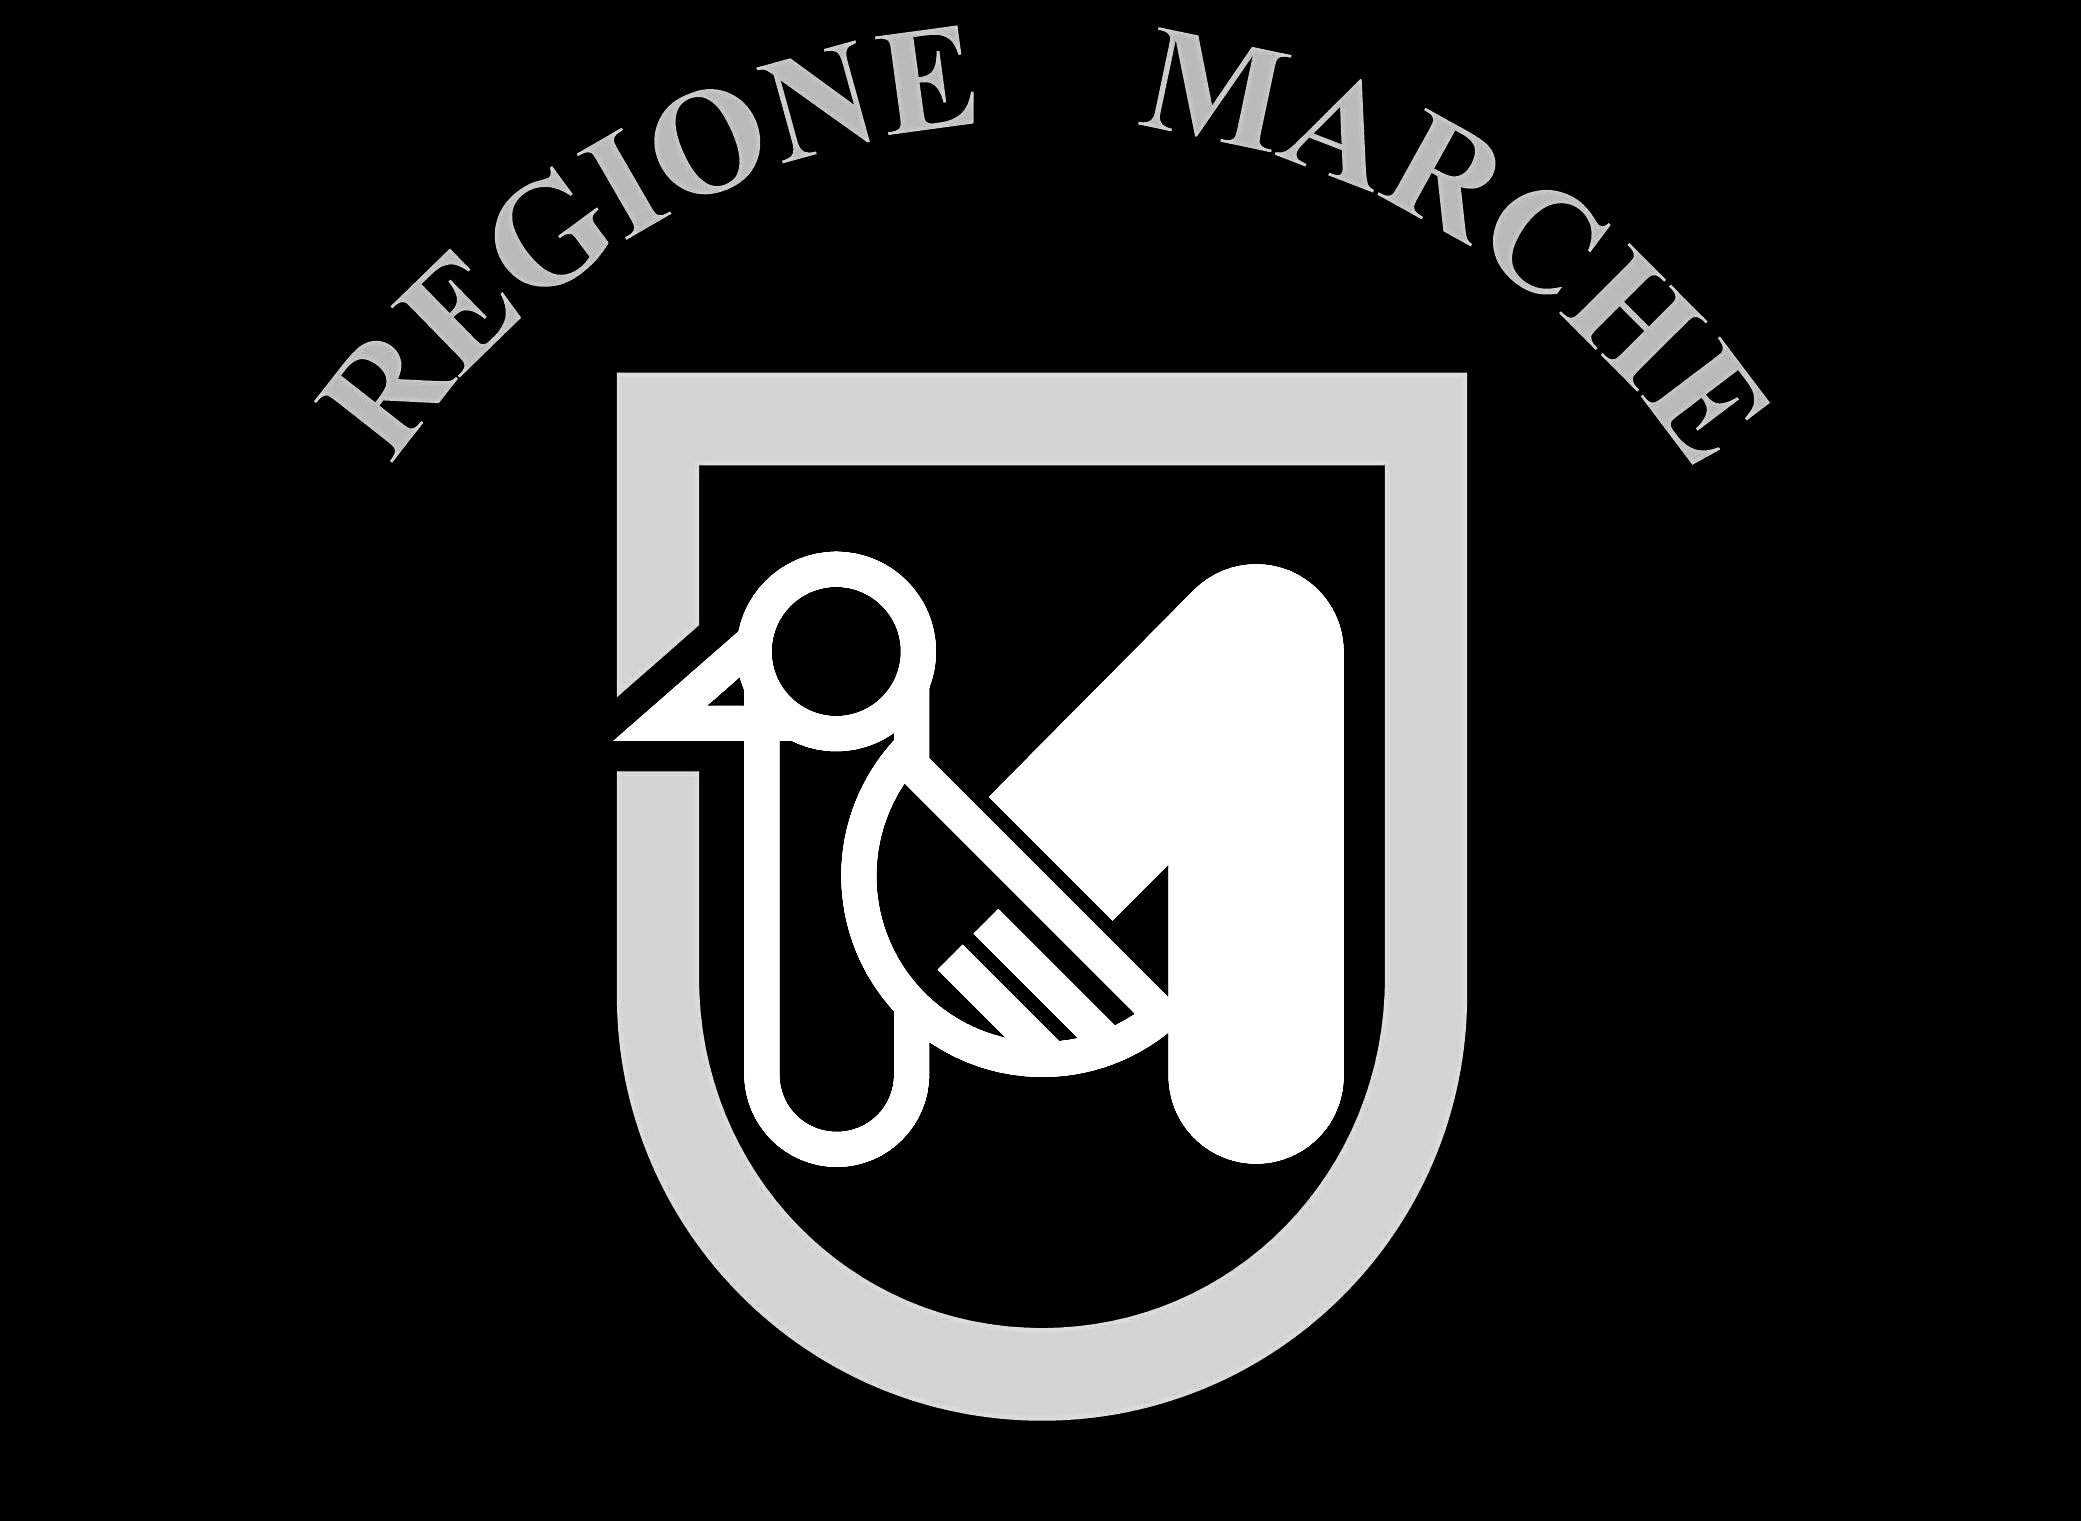 Regione Marche